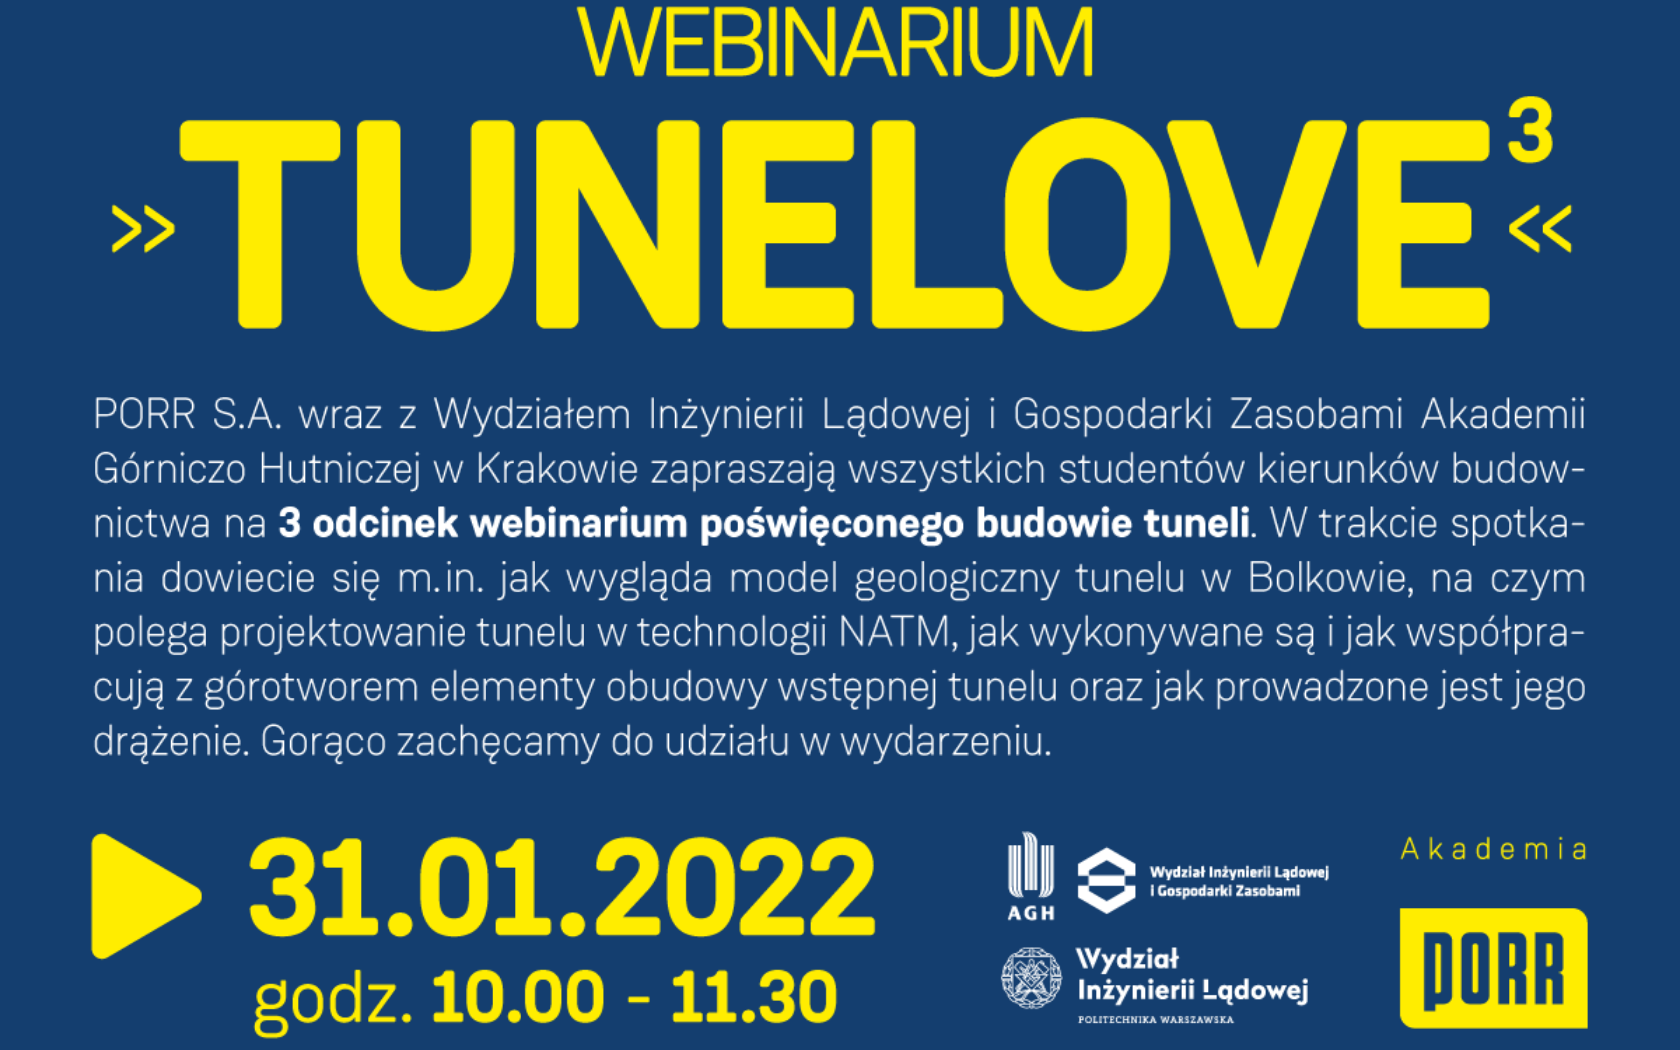 Grafika. Zółty napis na niebieskim tle. Napis brzmi: Webinarium TUNELOVE. 31.01.2022 godz. 10.00-11.30.